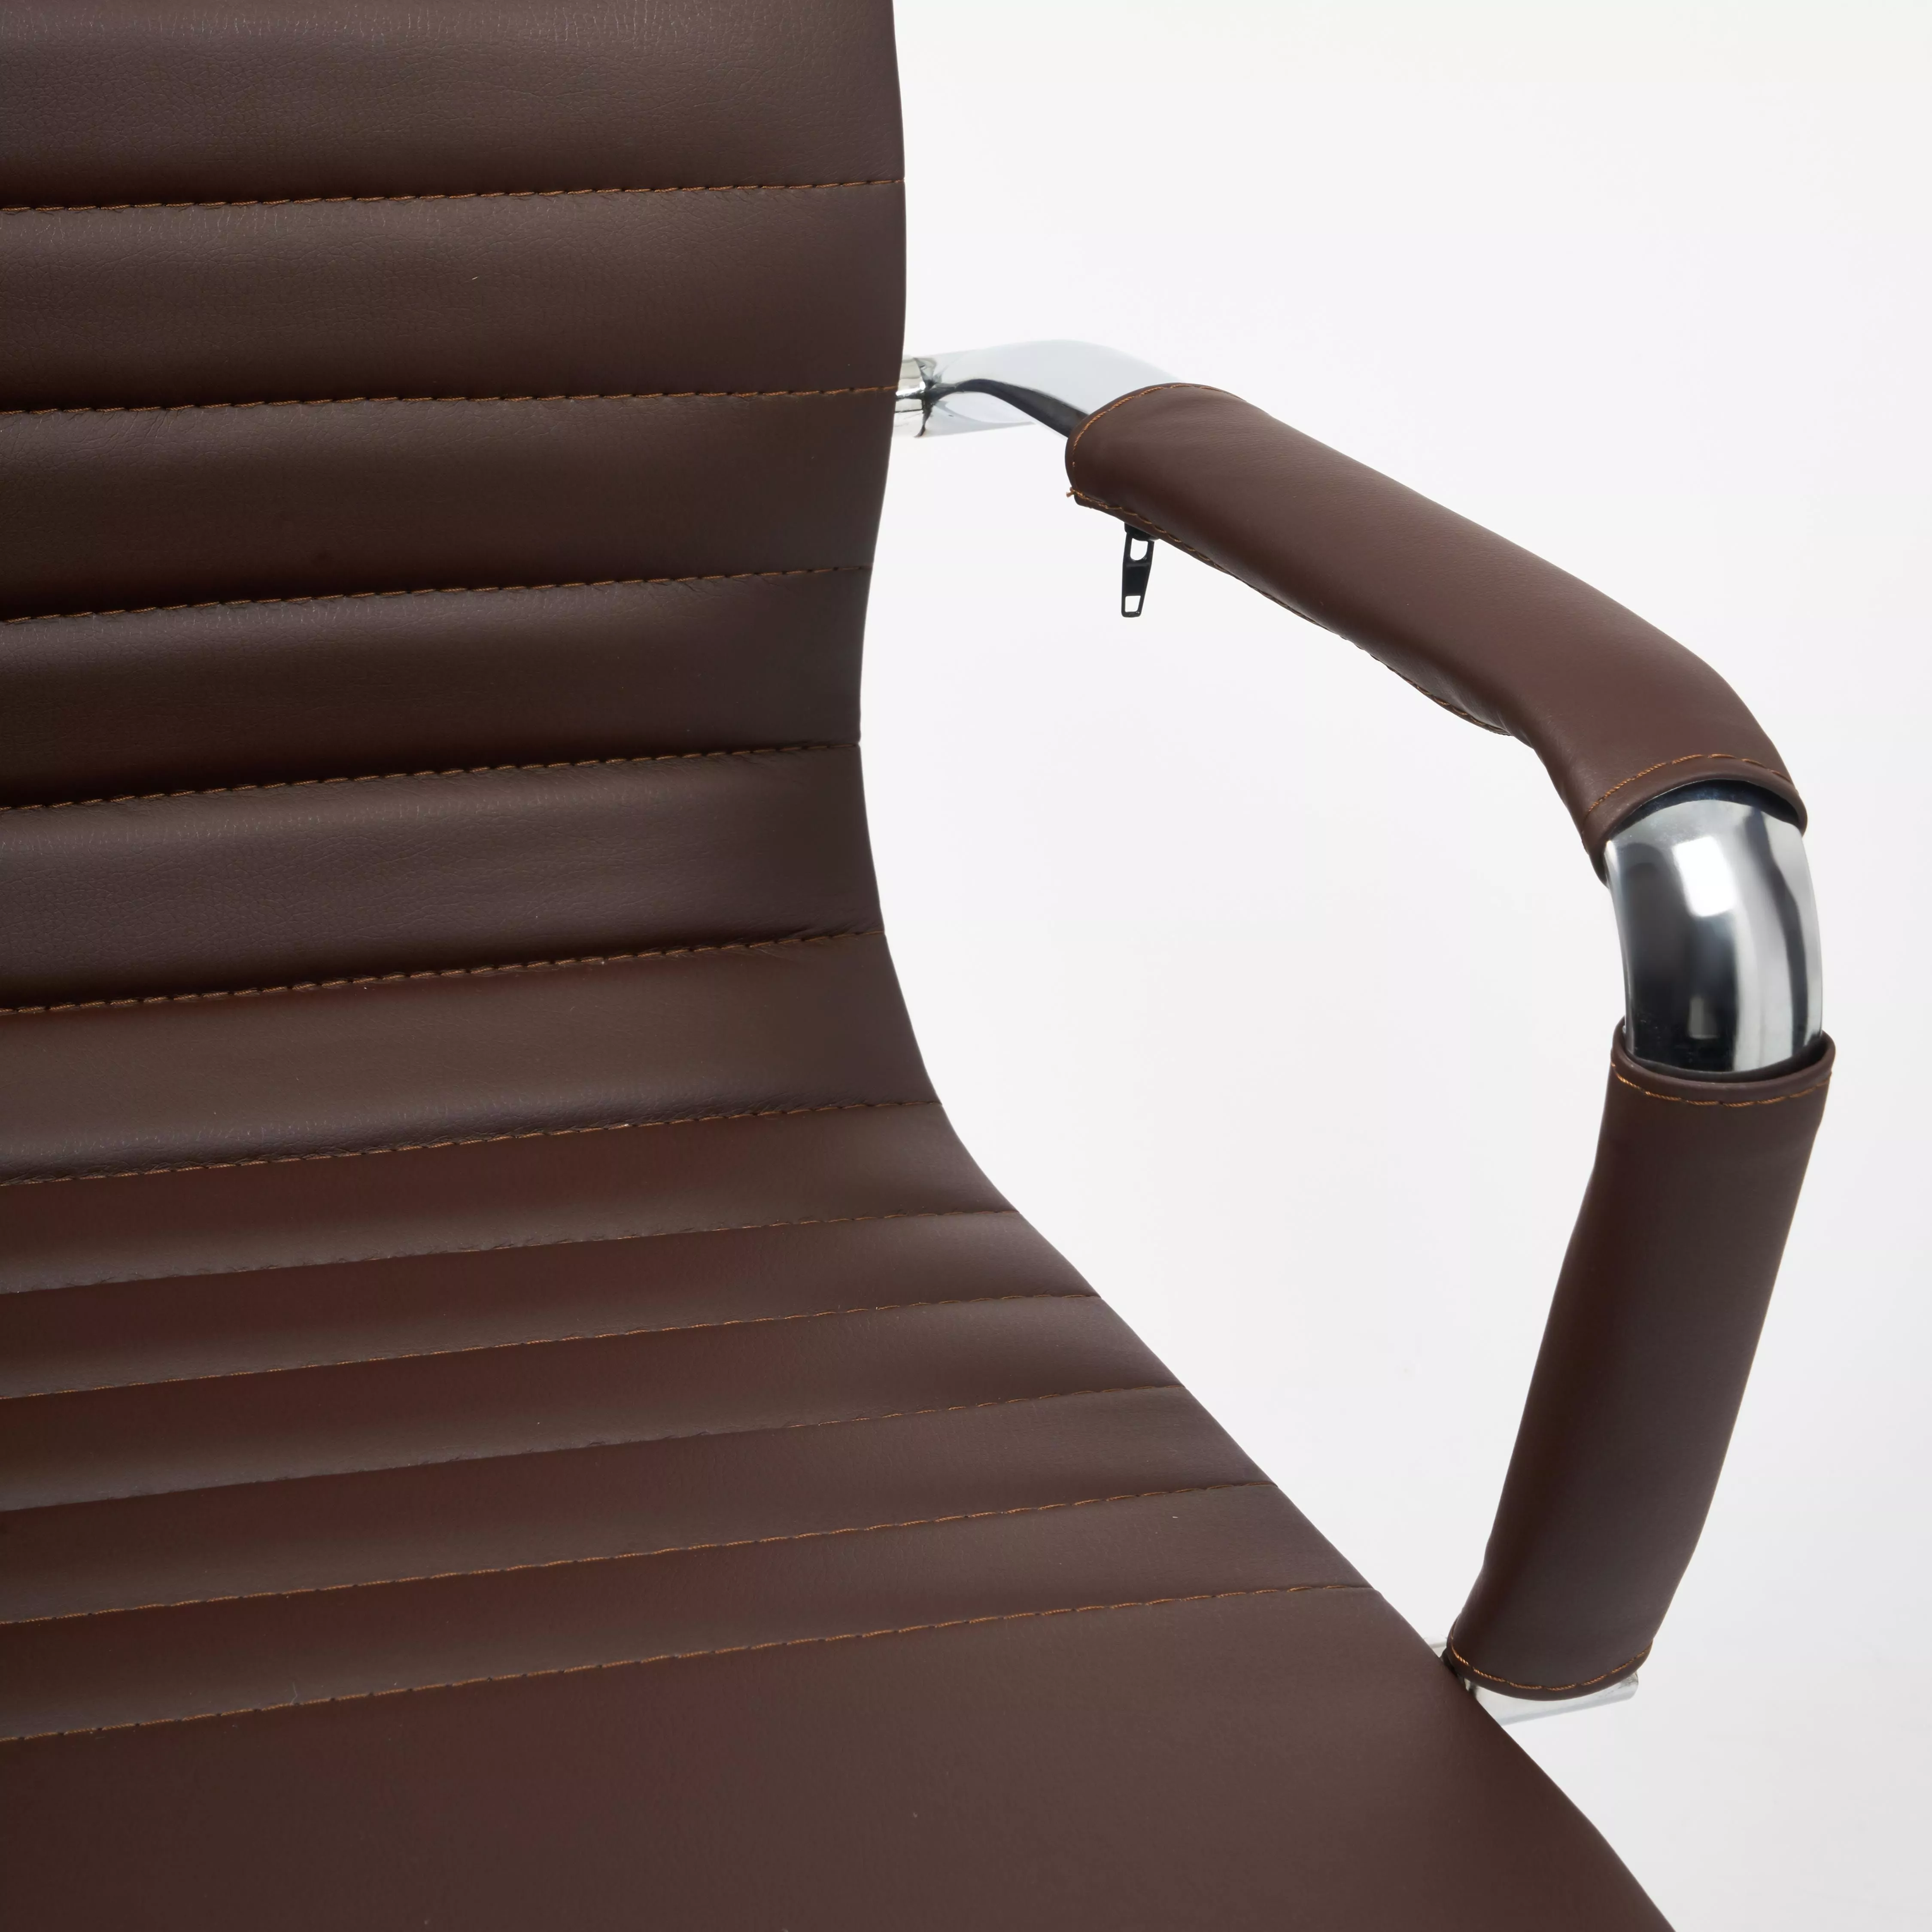 Кресло для руководителя URBAN кожзам коричневый